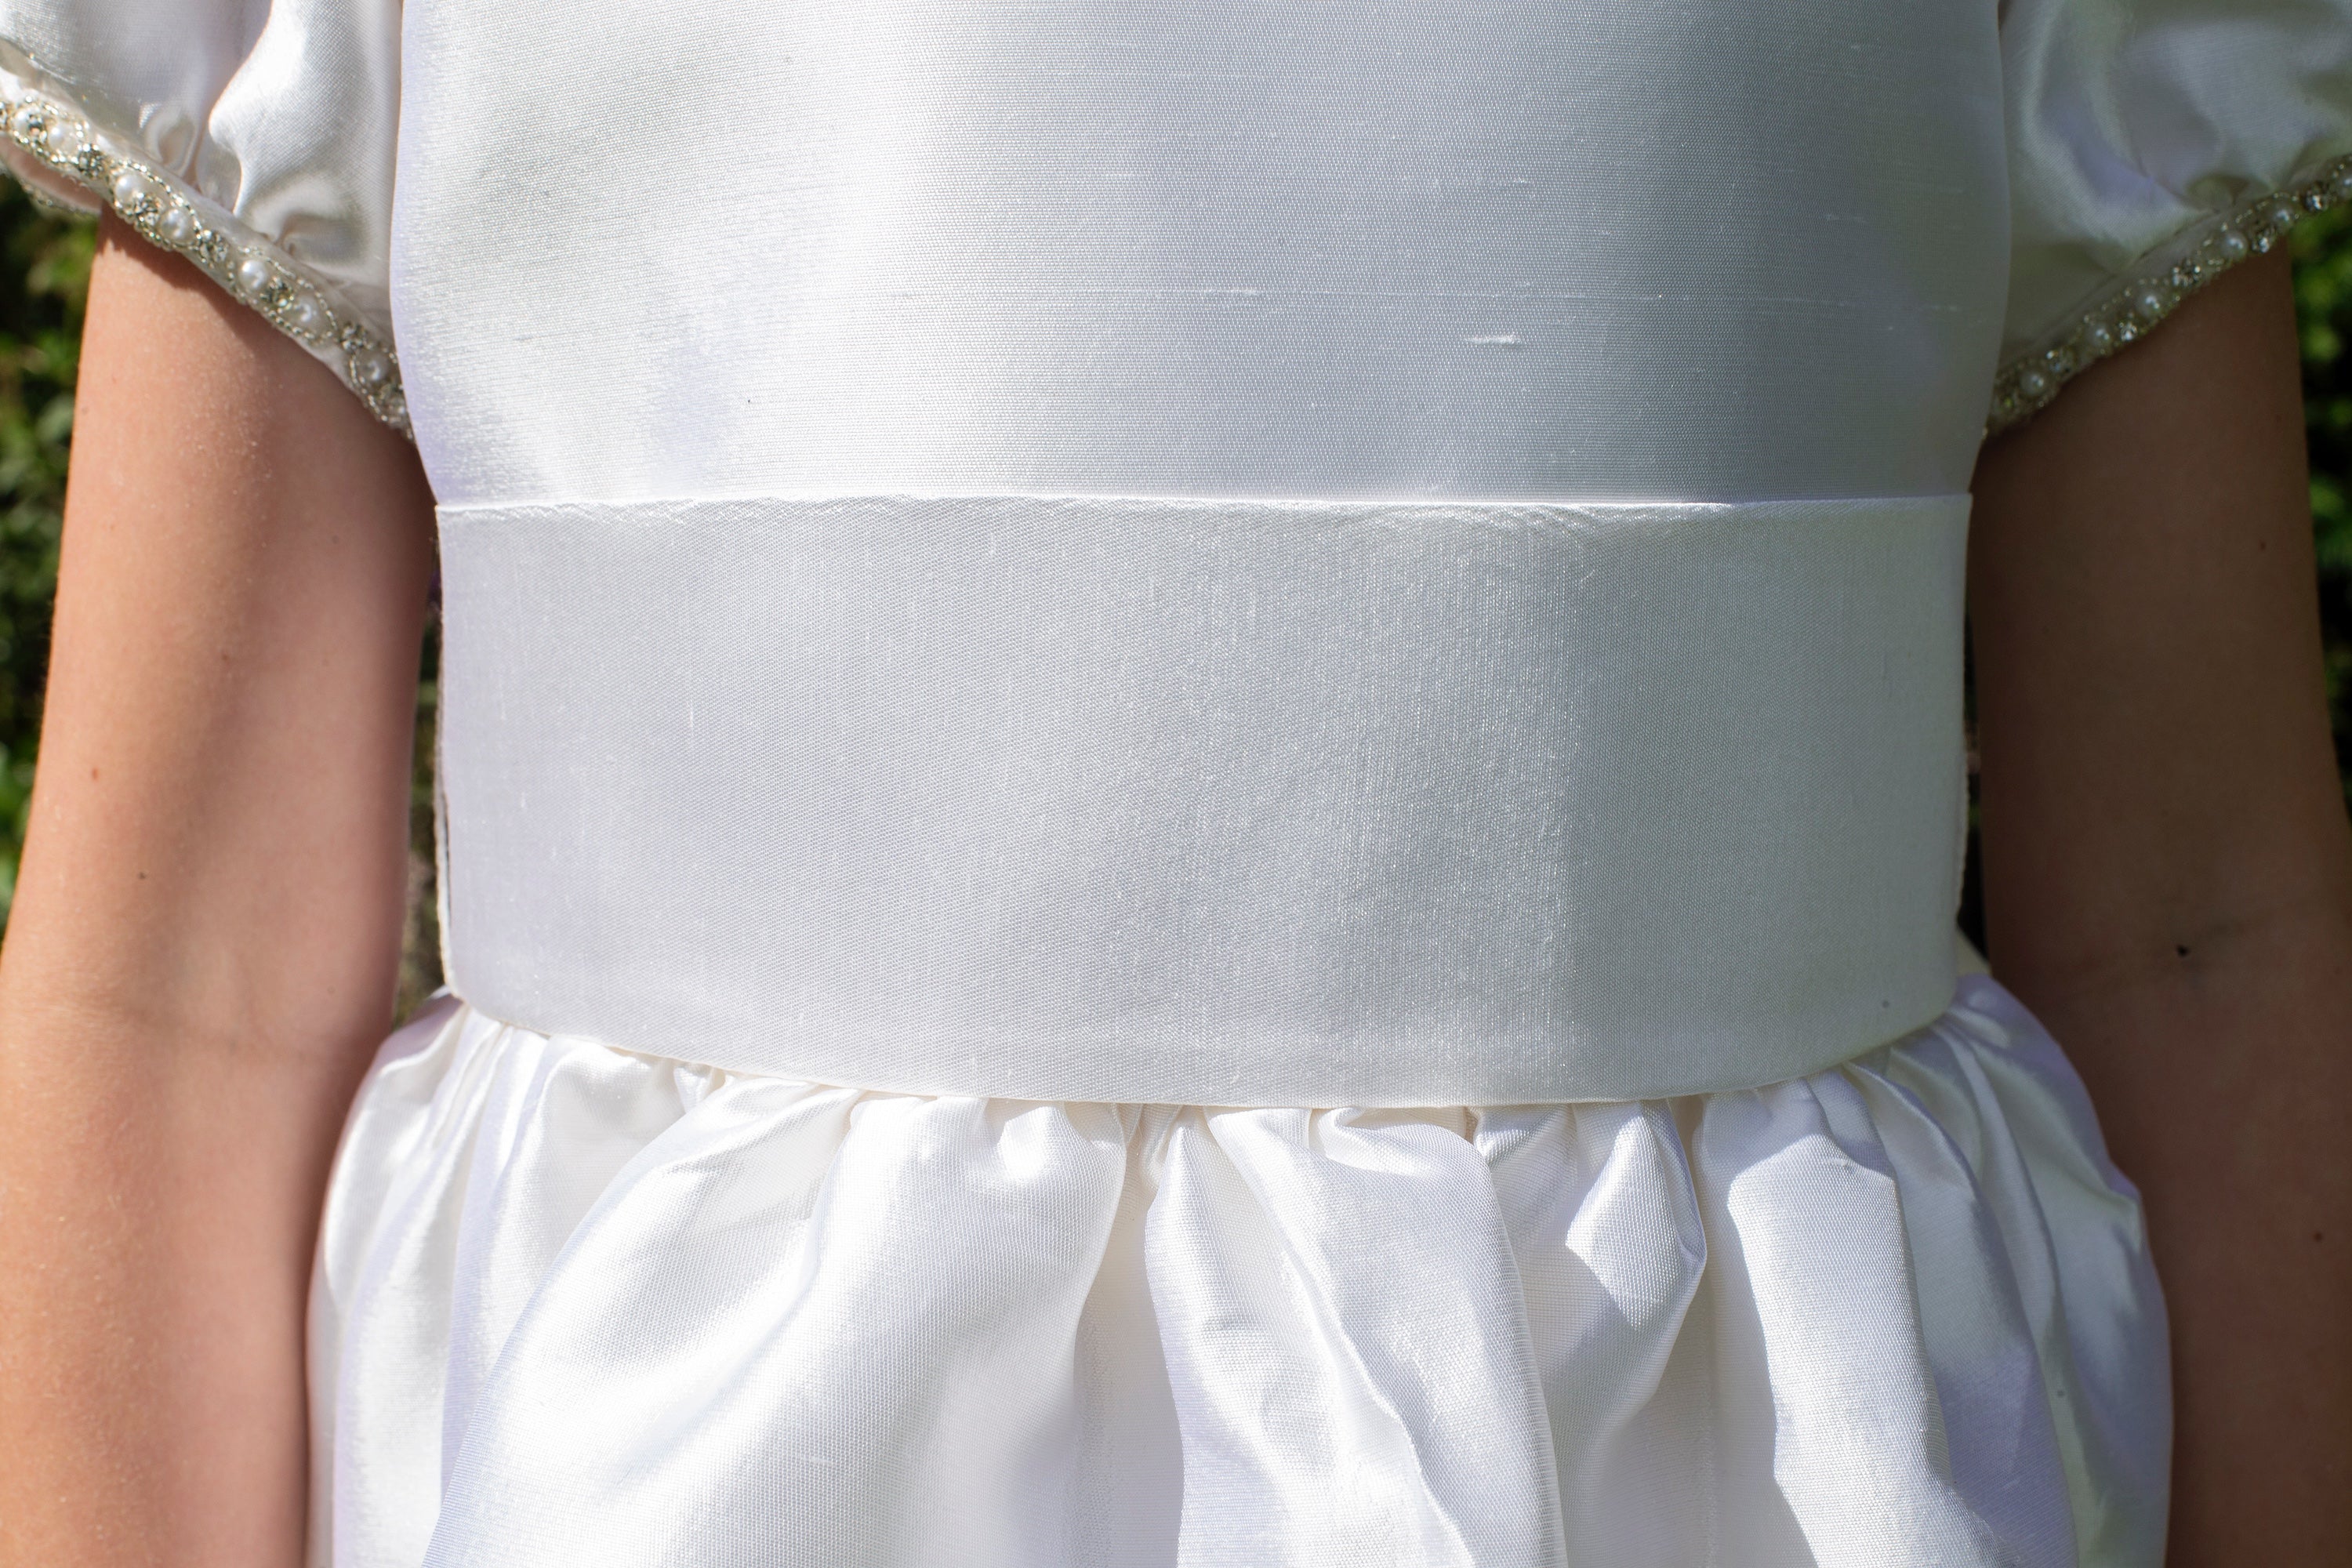 Daniella White Silk Girls Communion Dress